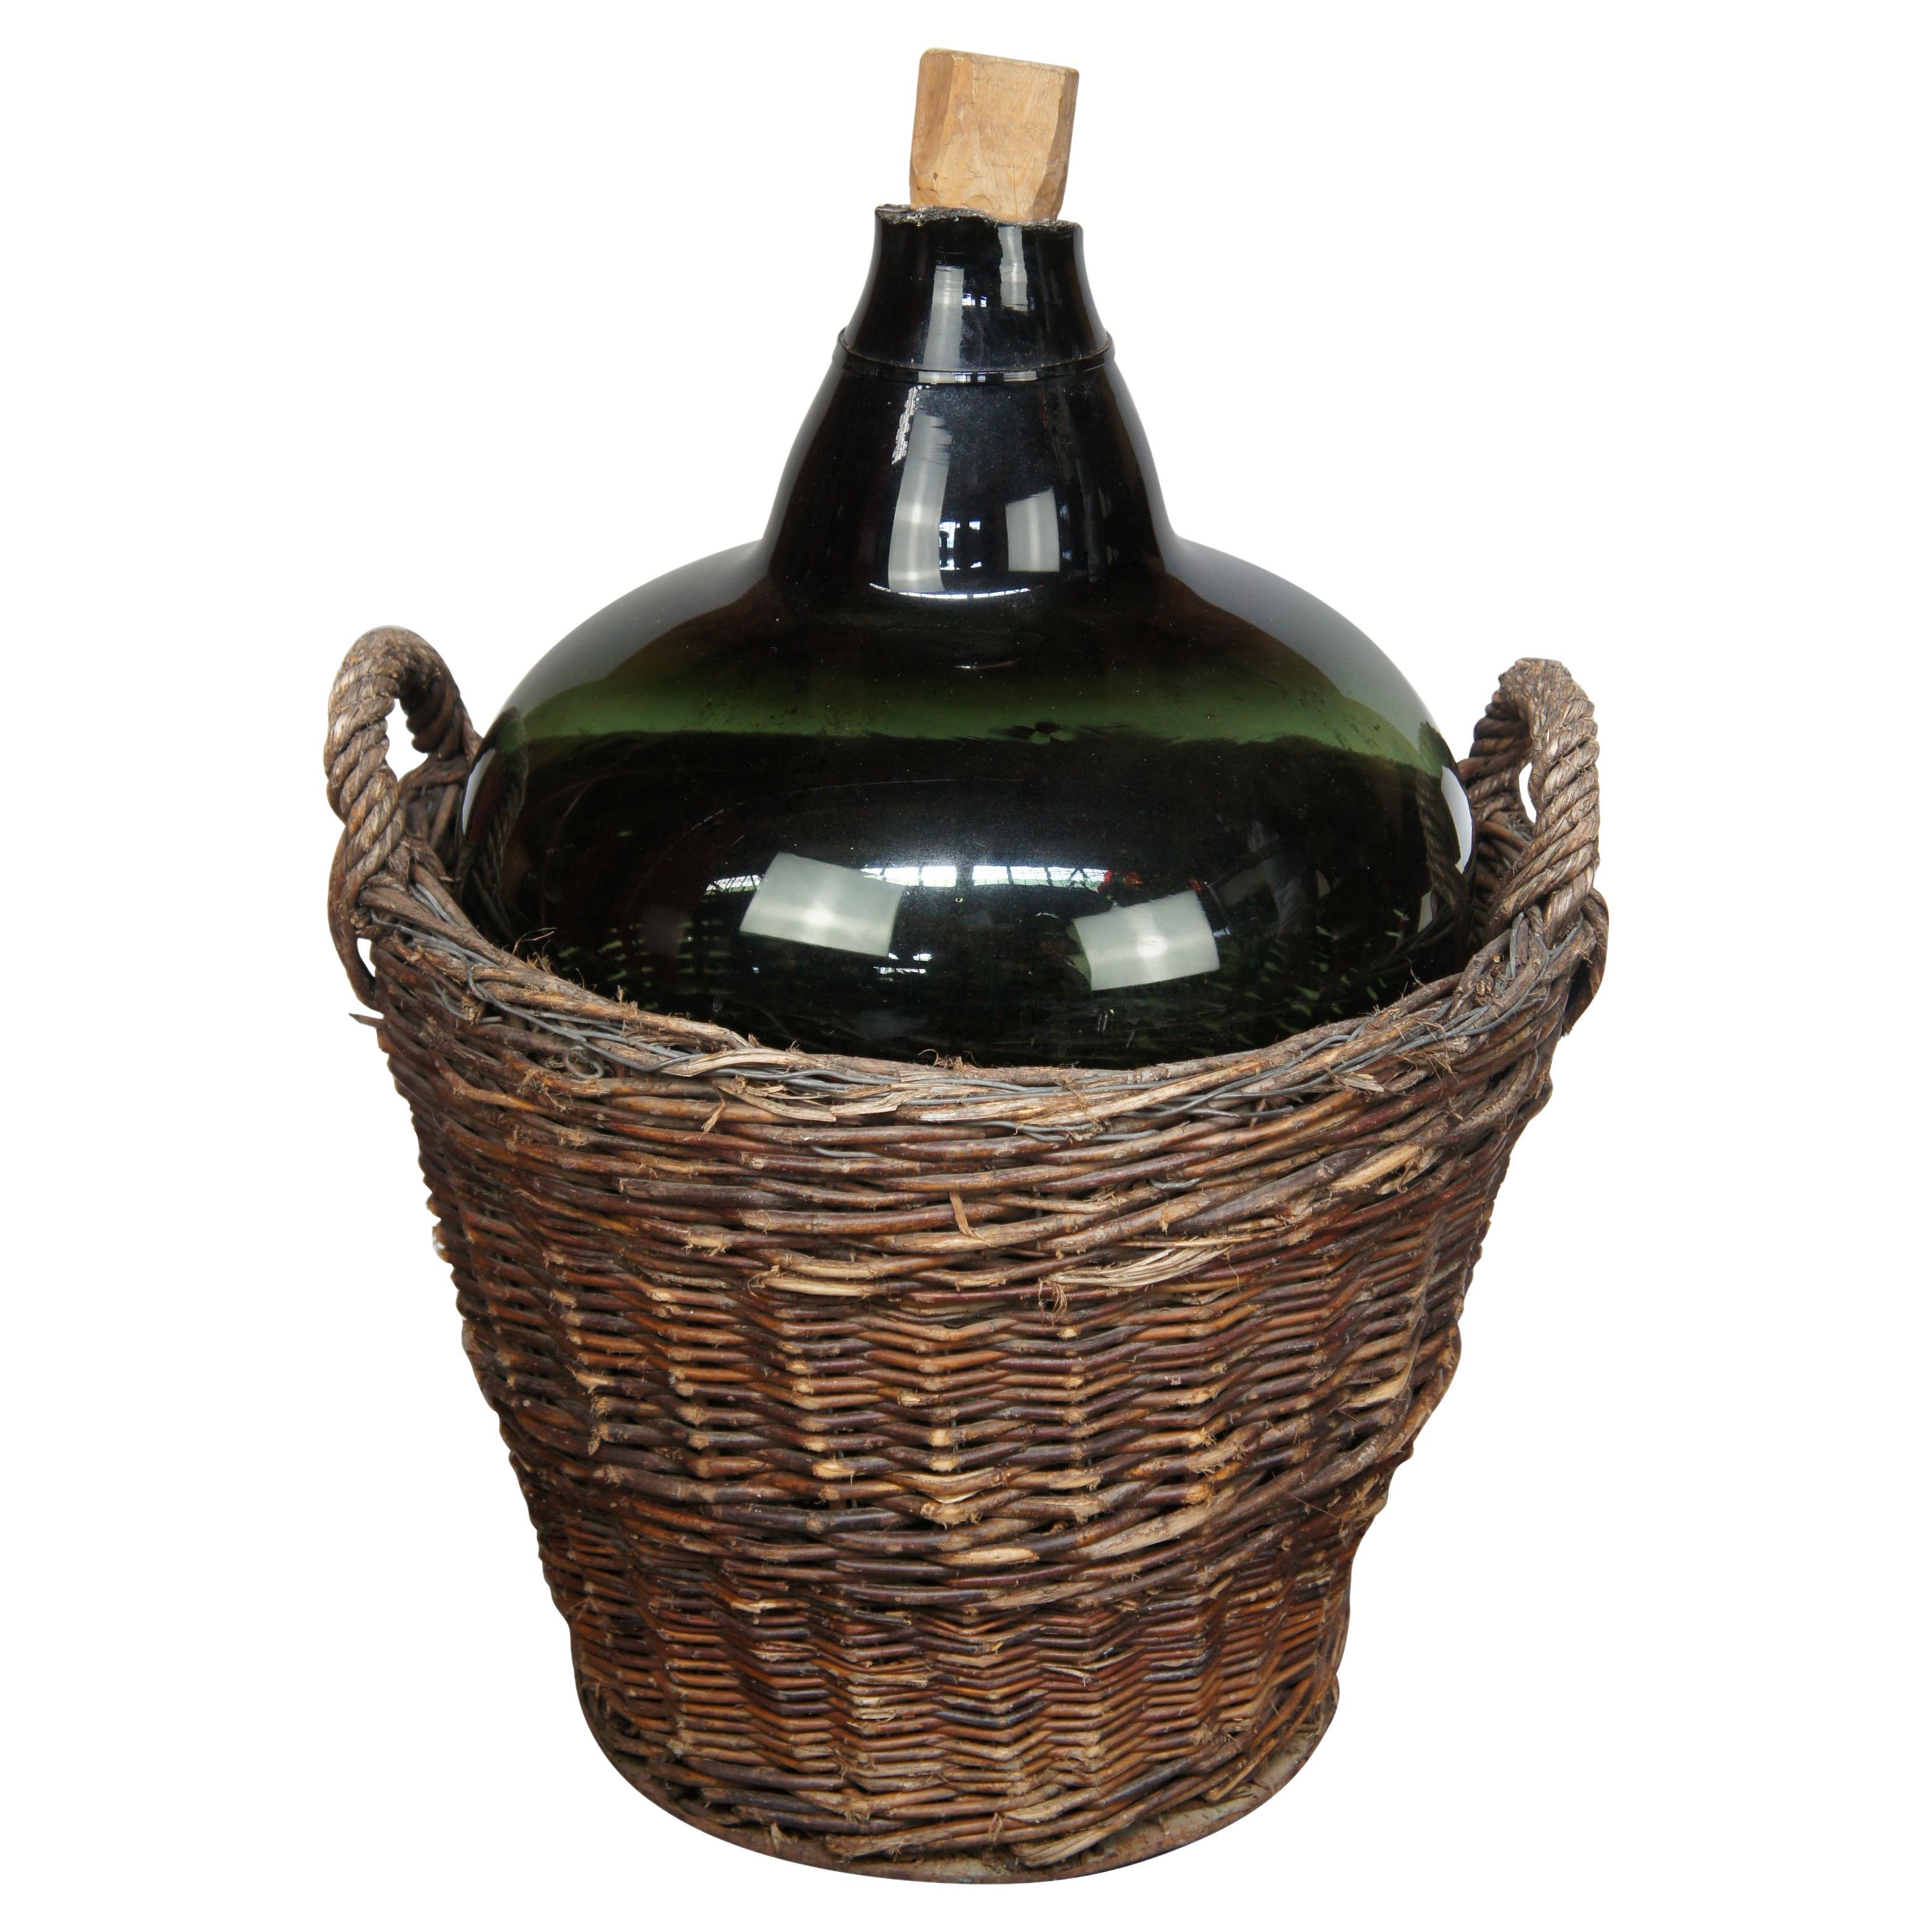 Antique French Hand Blown Glass Demijohn Wine Bottle Jug in Woven Wicker Basket